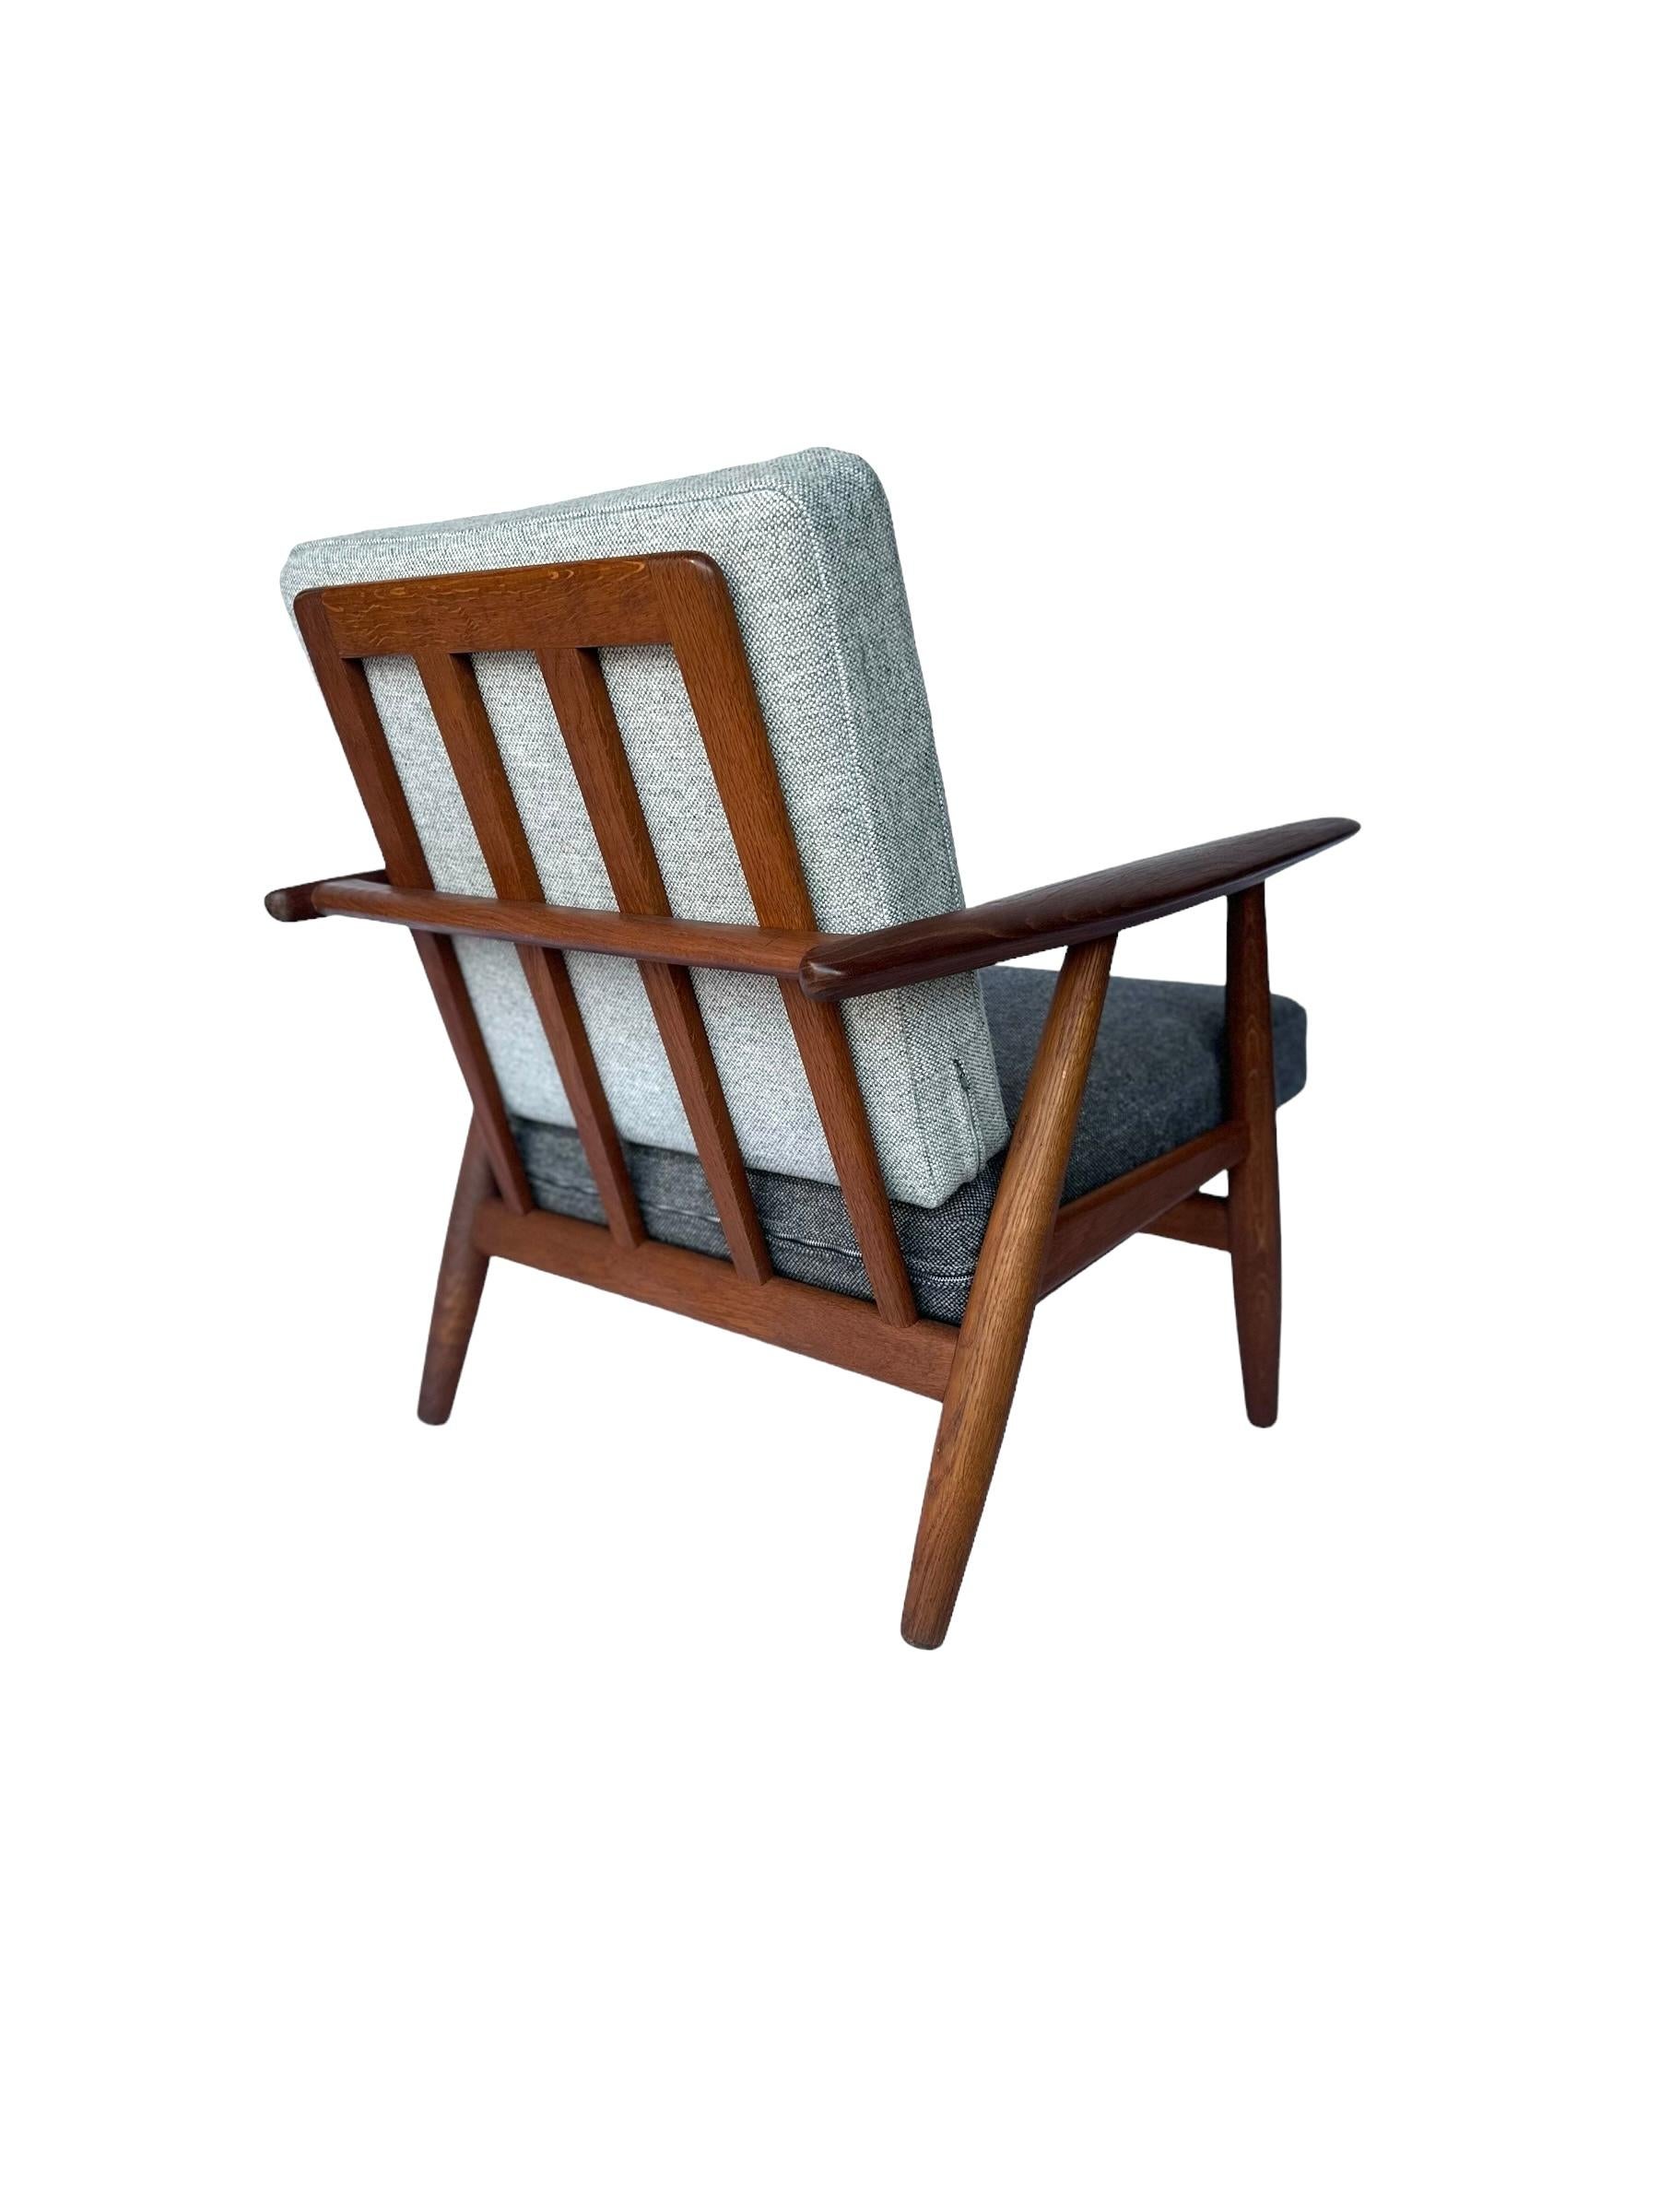 Hans J. Wegner Cigar Lounge Chair in Teak with New Maharam Upholstery For Sale 3